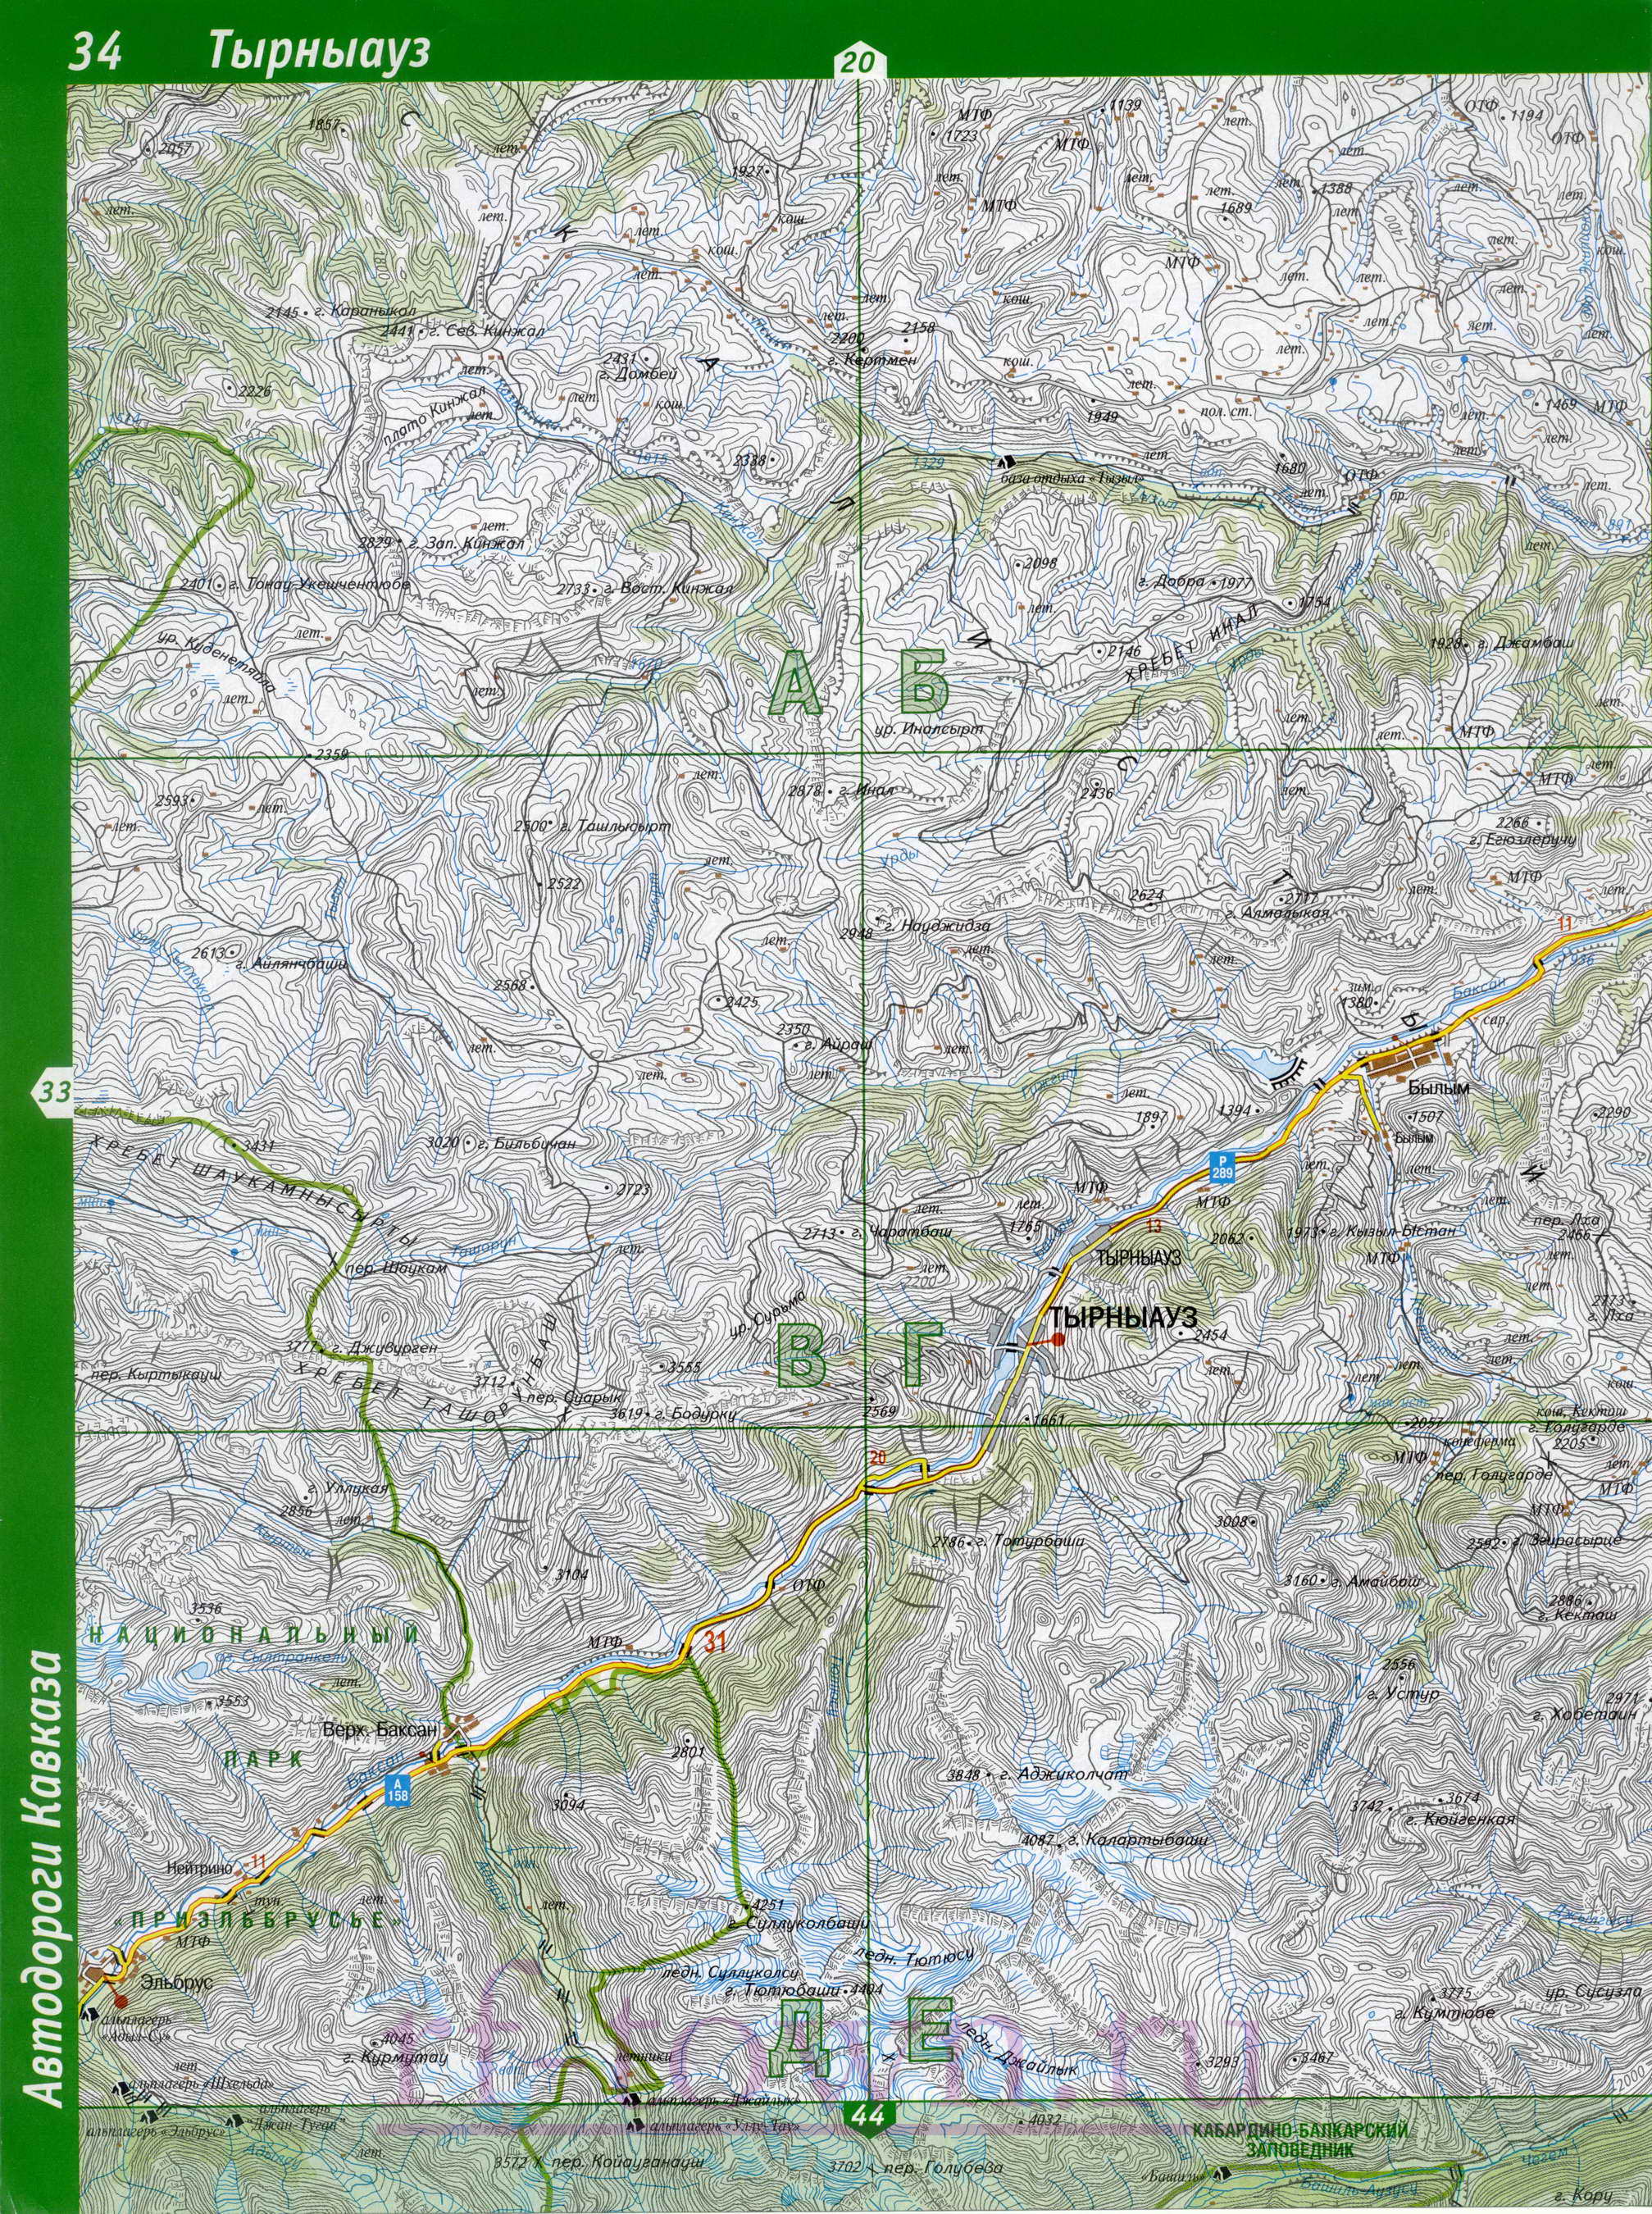 Карта Эльбрусского района Кабардино-Балкарии. Эльбрусский район топографическая карта масштаба 1см:2км, B0 - 